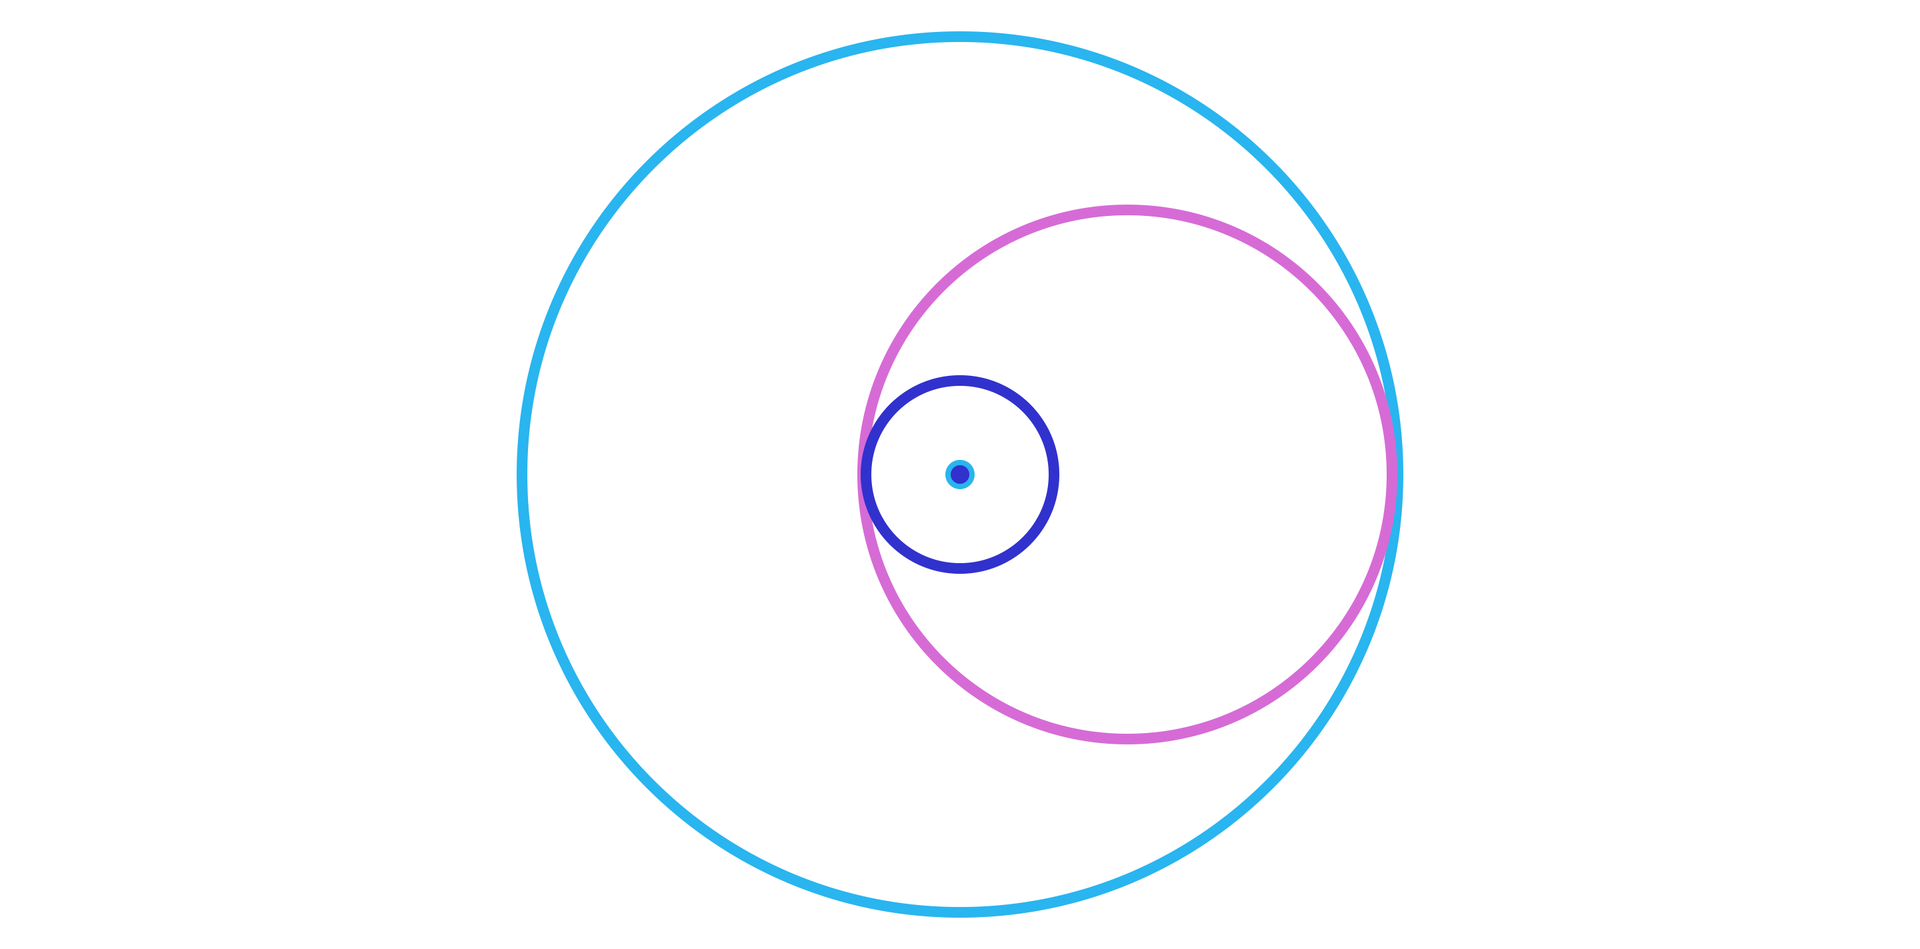 Ilustracja przedstawia duży okrąg, a w nim dwa mniejsze. Wszystkie mają wspólną oś poziomą. Średni, wewnętrzny okrąg, leży po prawo i jest styczny do dużego okręgu oraz do małego okręgu, przy czym mały okrąg jest też wewnętrznym okręgiem średniego i dużego okręgu. Punkt wspólny okręgów małego i średniego znajduje się po ich lewej stronie. Mały okrąg ma wspólny środek z dużym okręgiem.